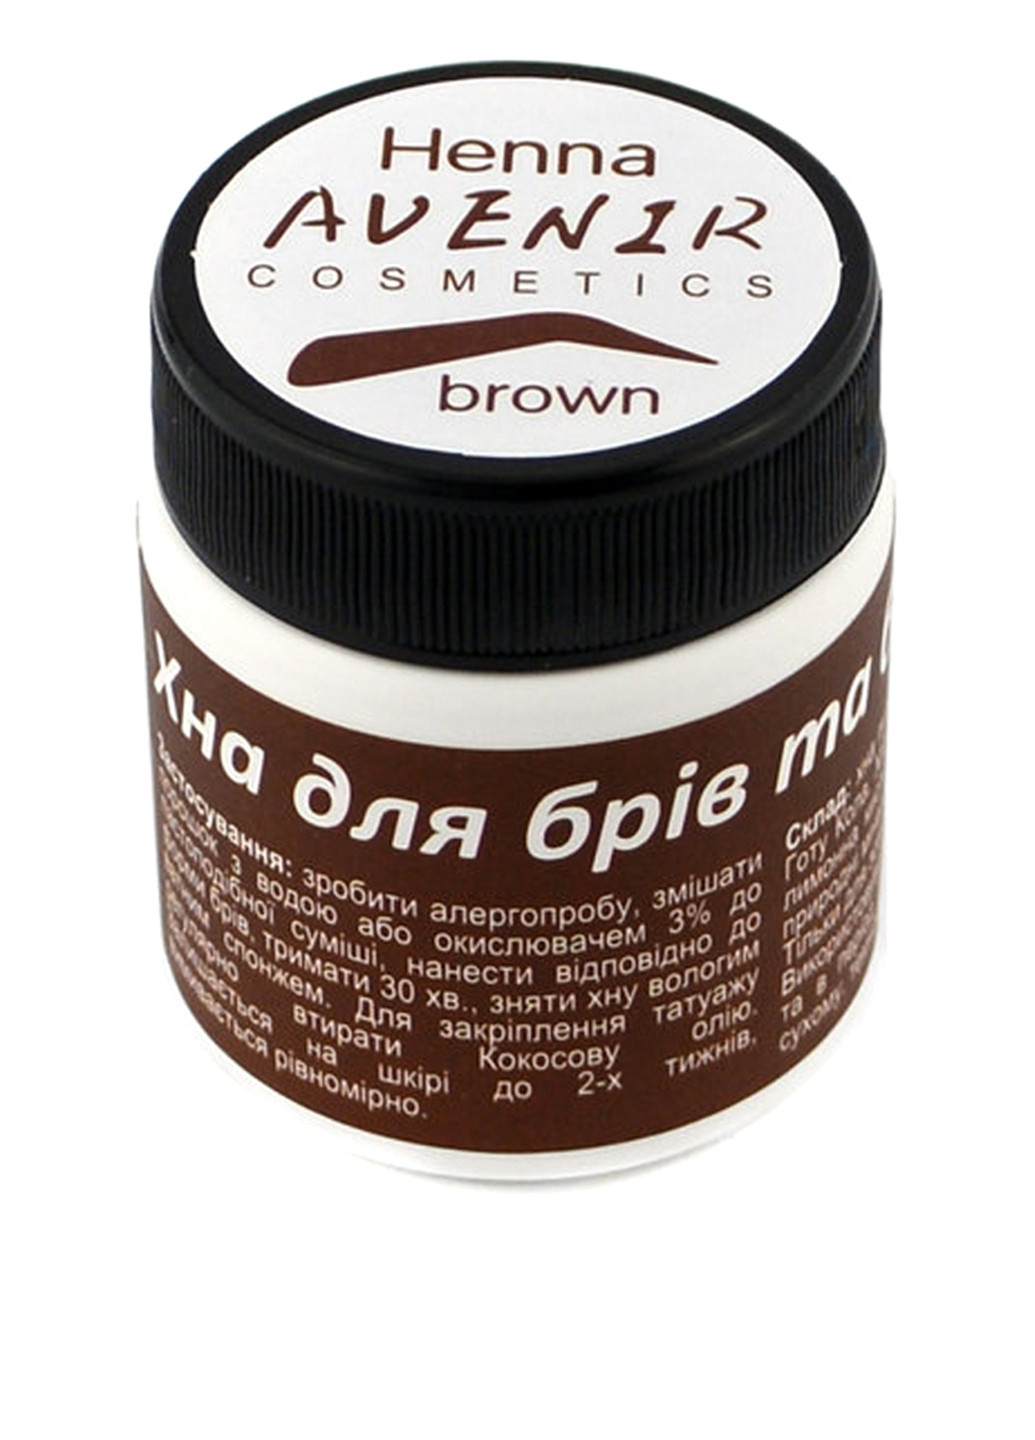 Хна для окрашивания бровей и био-тату (натурально-коричневый), 25 г AVENIR Cosmetics (113784873)